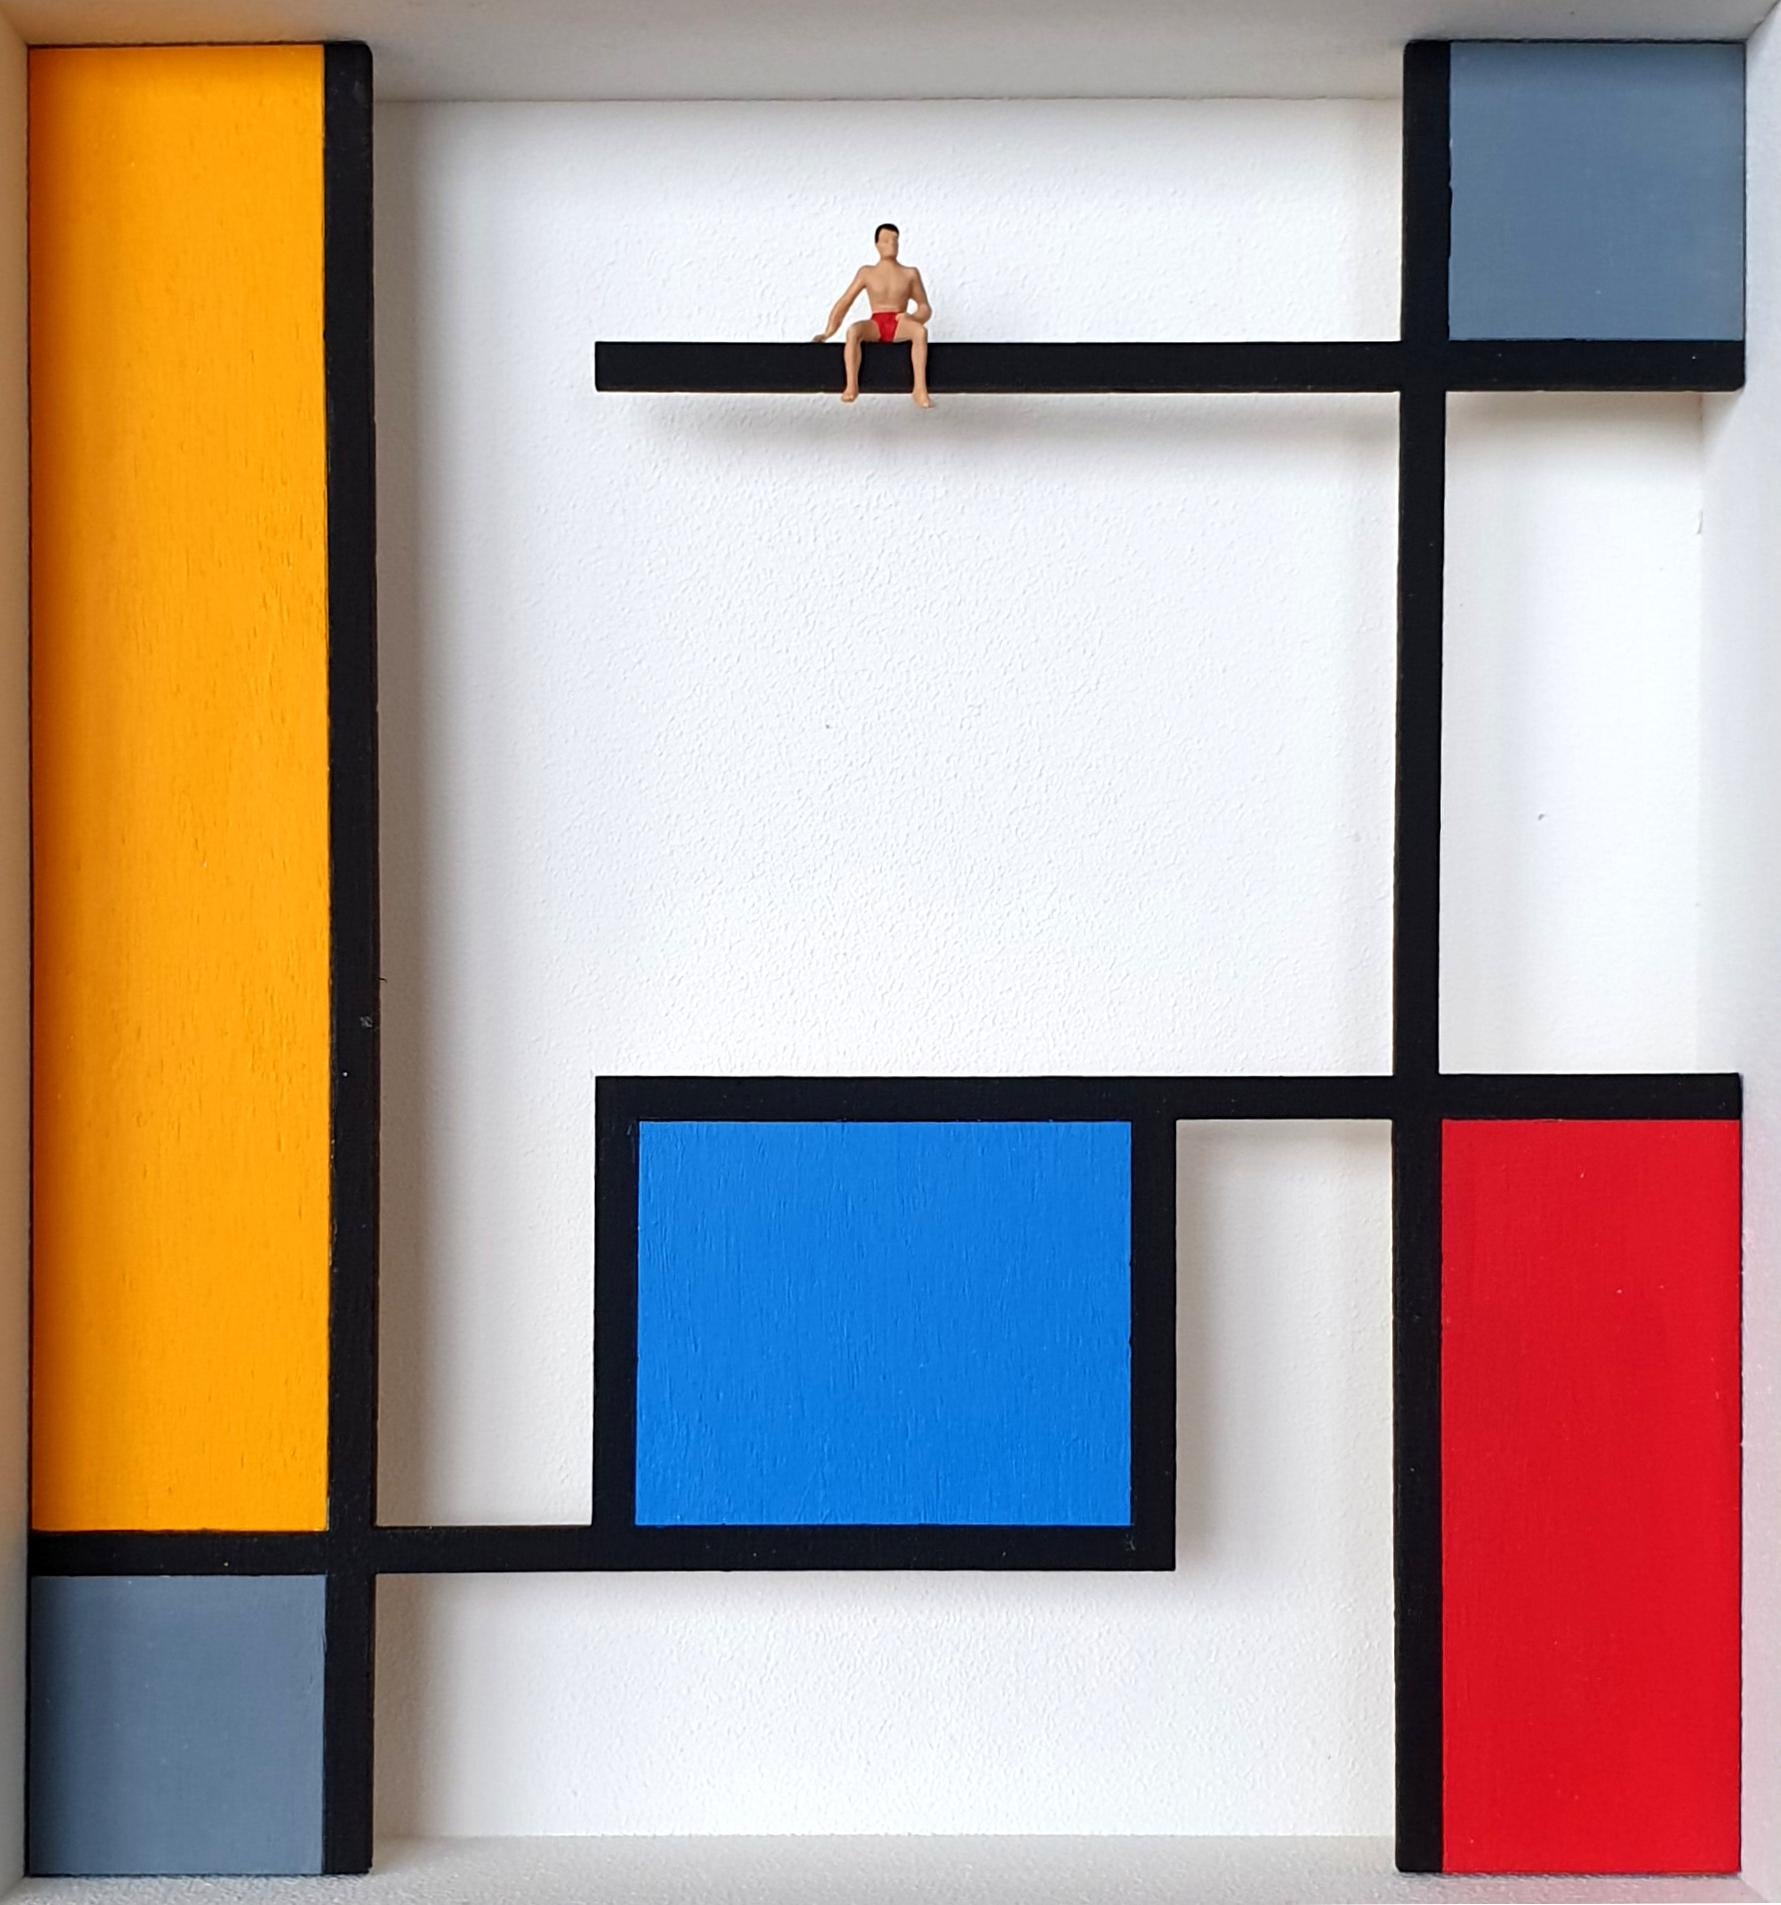 Hommage an Mondrian - The POOL - zeitgenössisches Kunstwerk, Design-Hommage an den niederländischen Meister – Mixed Media Art von Volker Kuhn